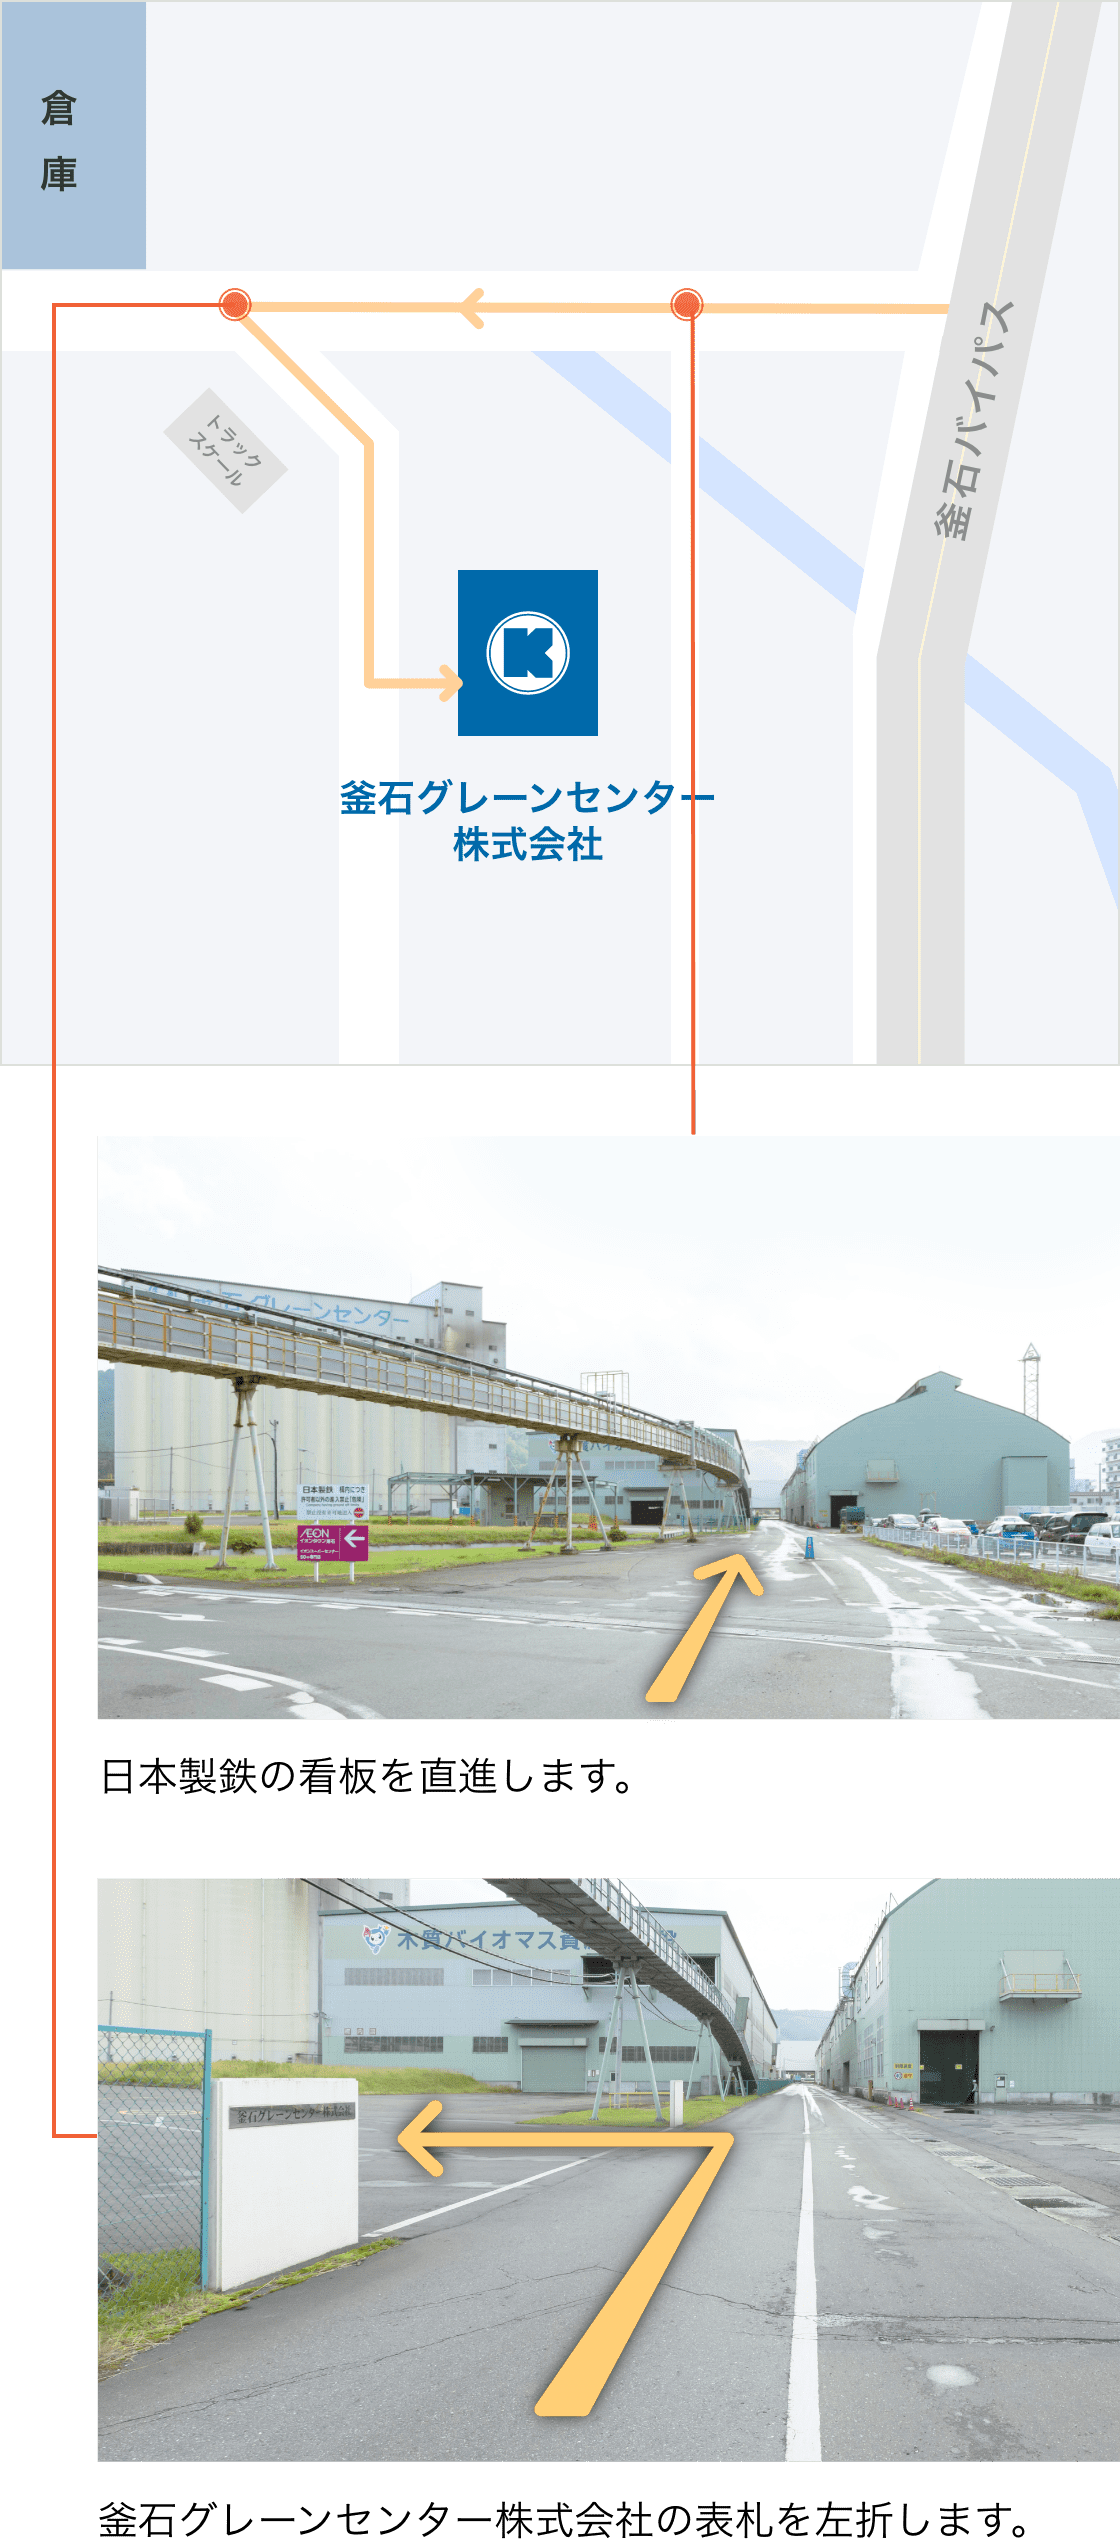 日本製鉄の看板を直進します。次に釜石グレーンセンター株式会社の表札を左折します。